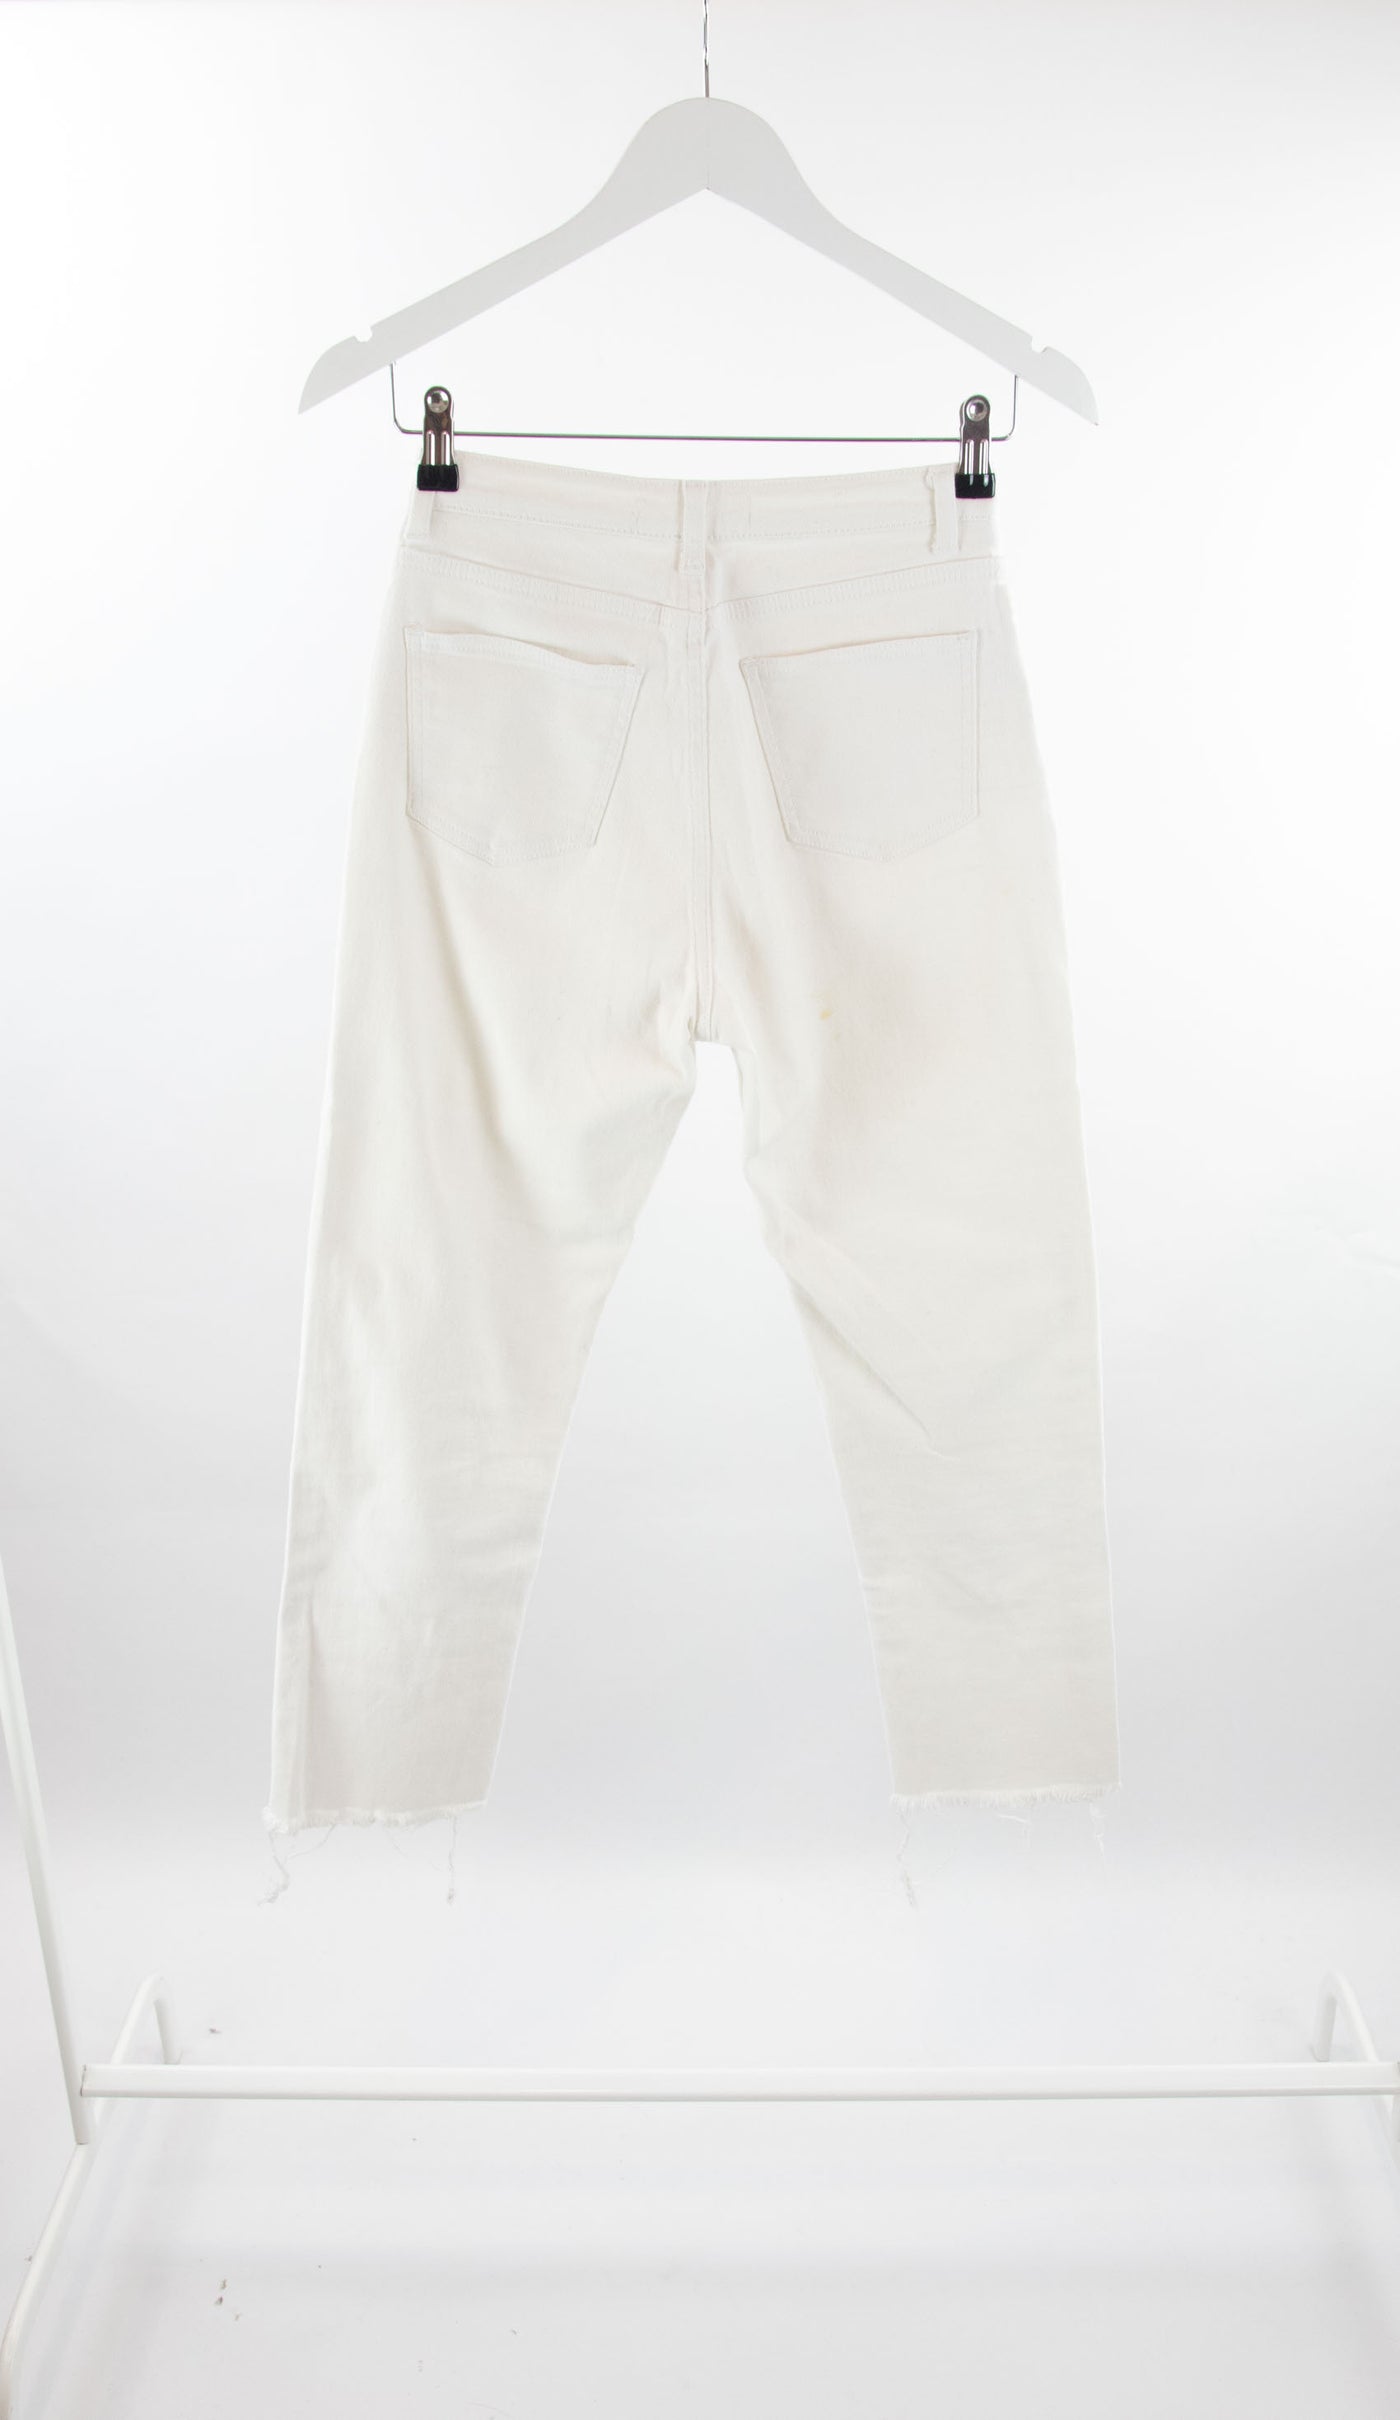 Jeans blanco pitillo